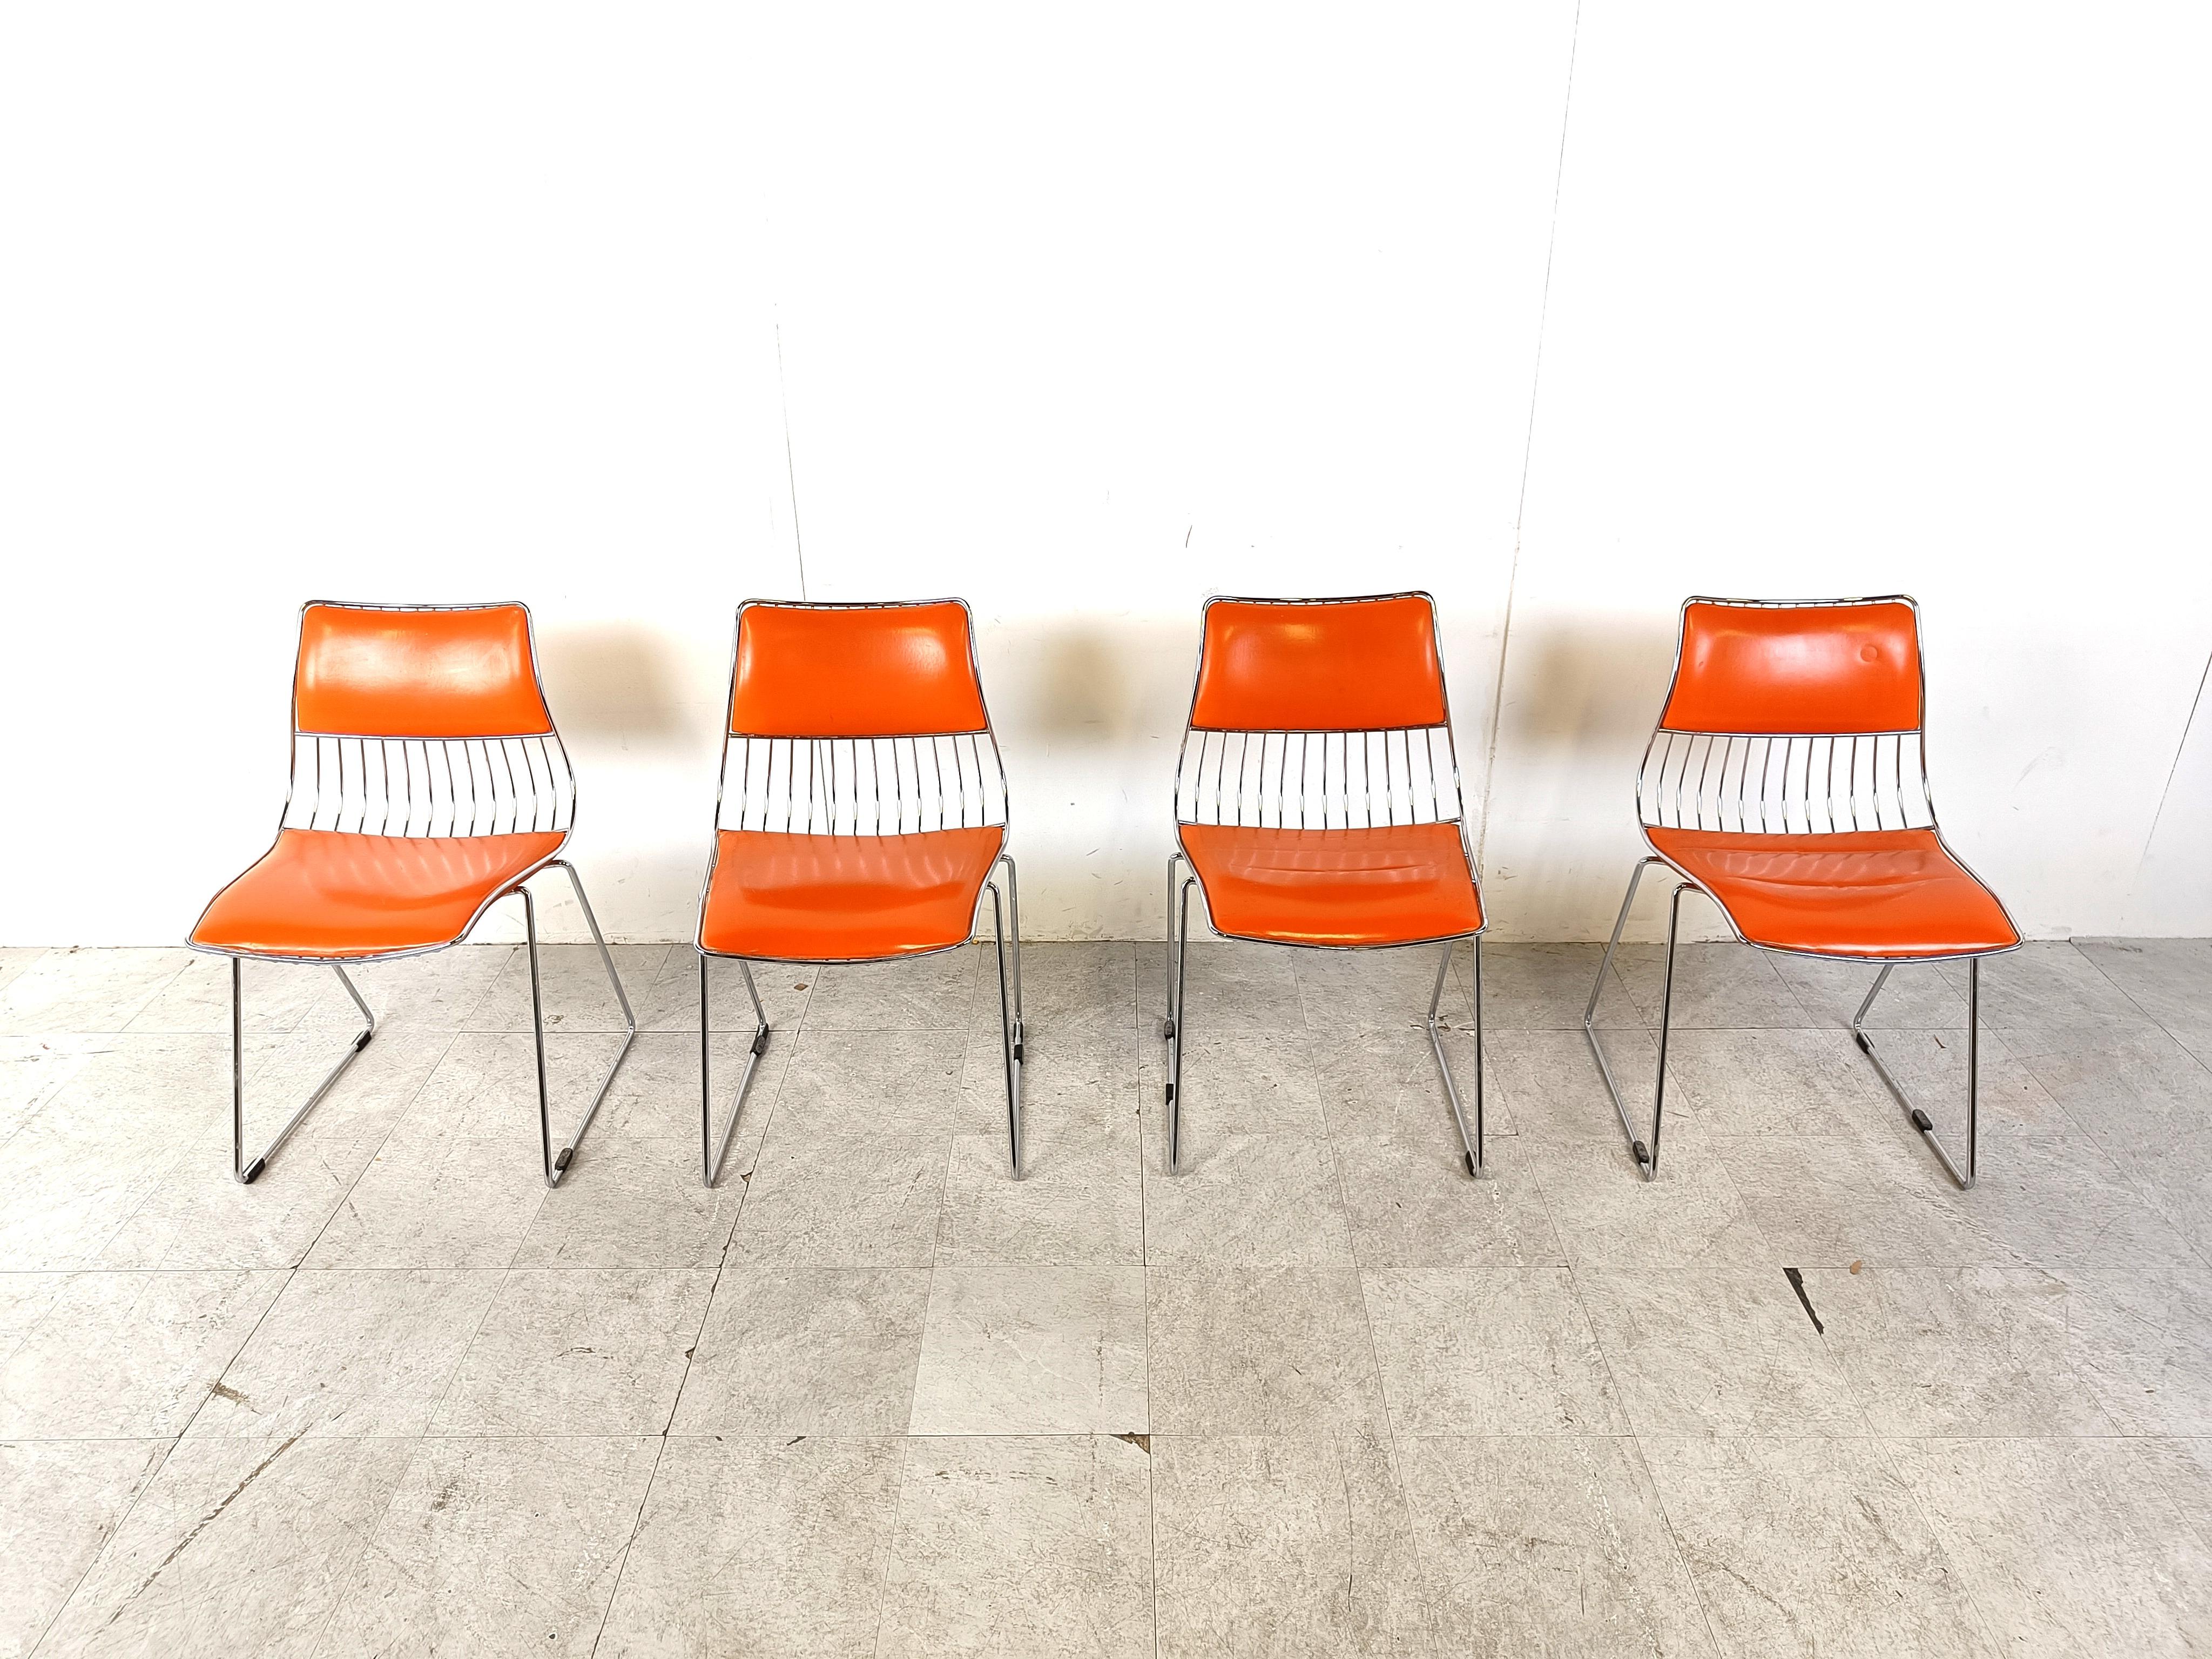 Set aus 4 stapelbaren Esszimmerstühlen, entworfen von Rudi Verelst.

Sie haben ein schweres, verdrahtetes Chromgestell mit orangefarbener Kunstlederbespannung.

Die Stühle sind in einem sehr guten Zustand und haben keine Schäden.

Sie liegen gut in